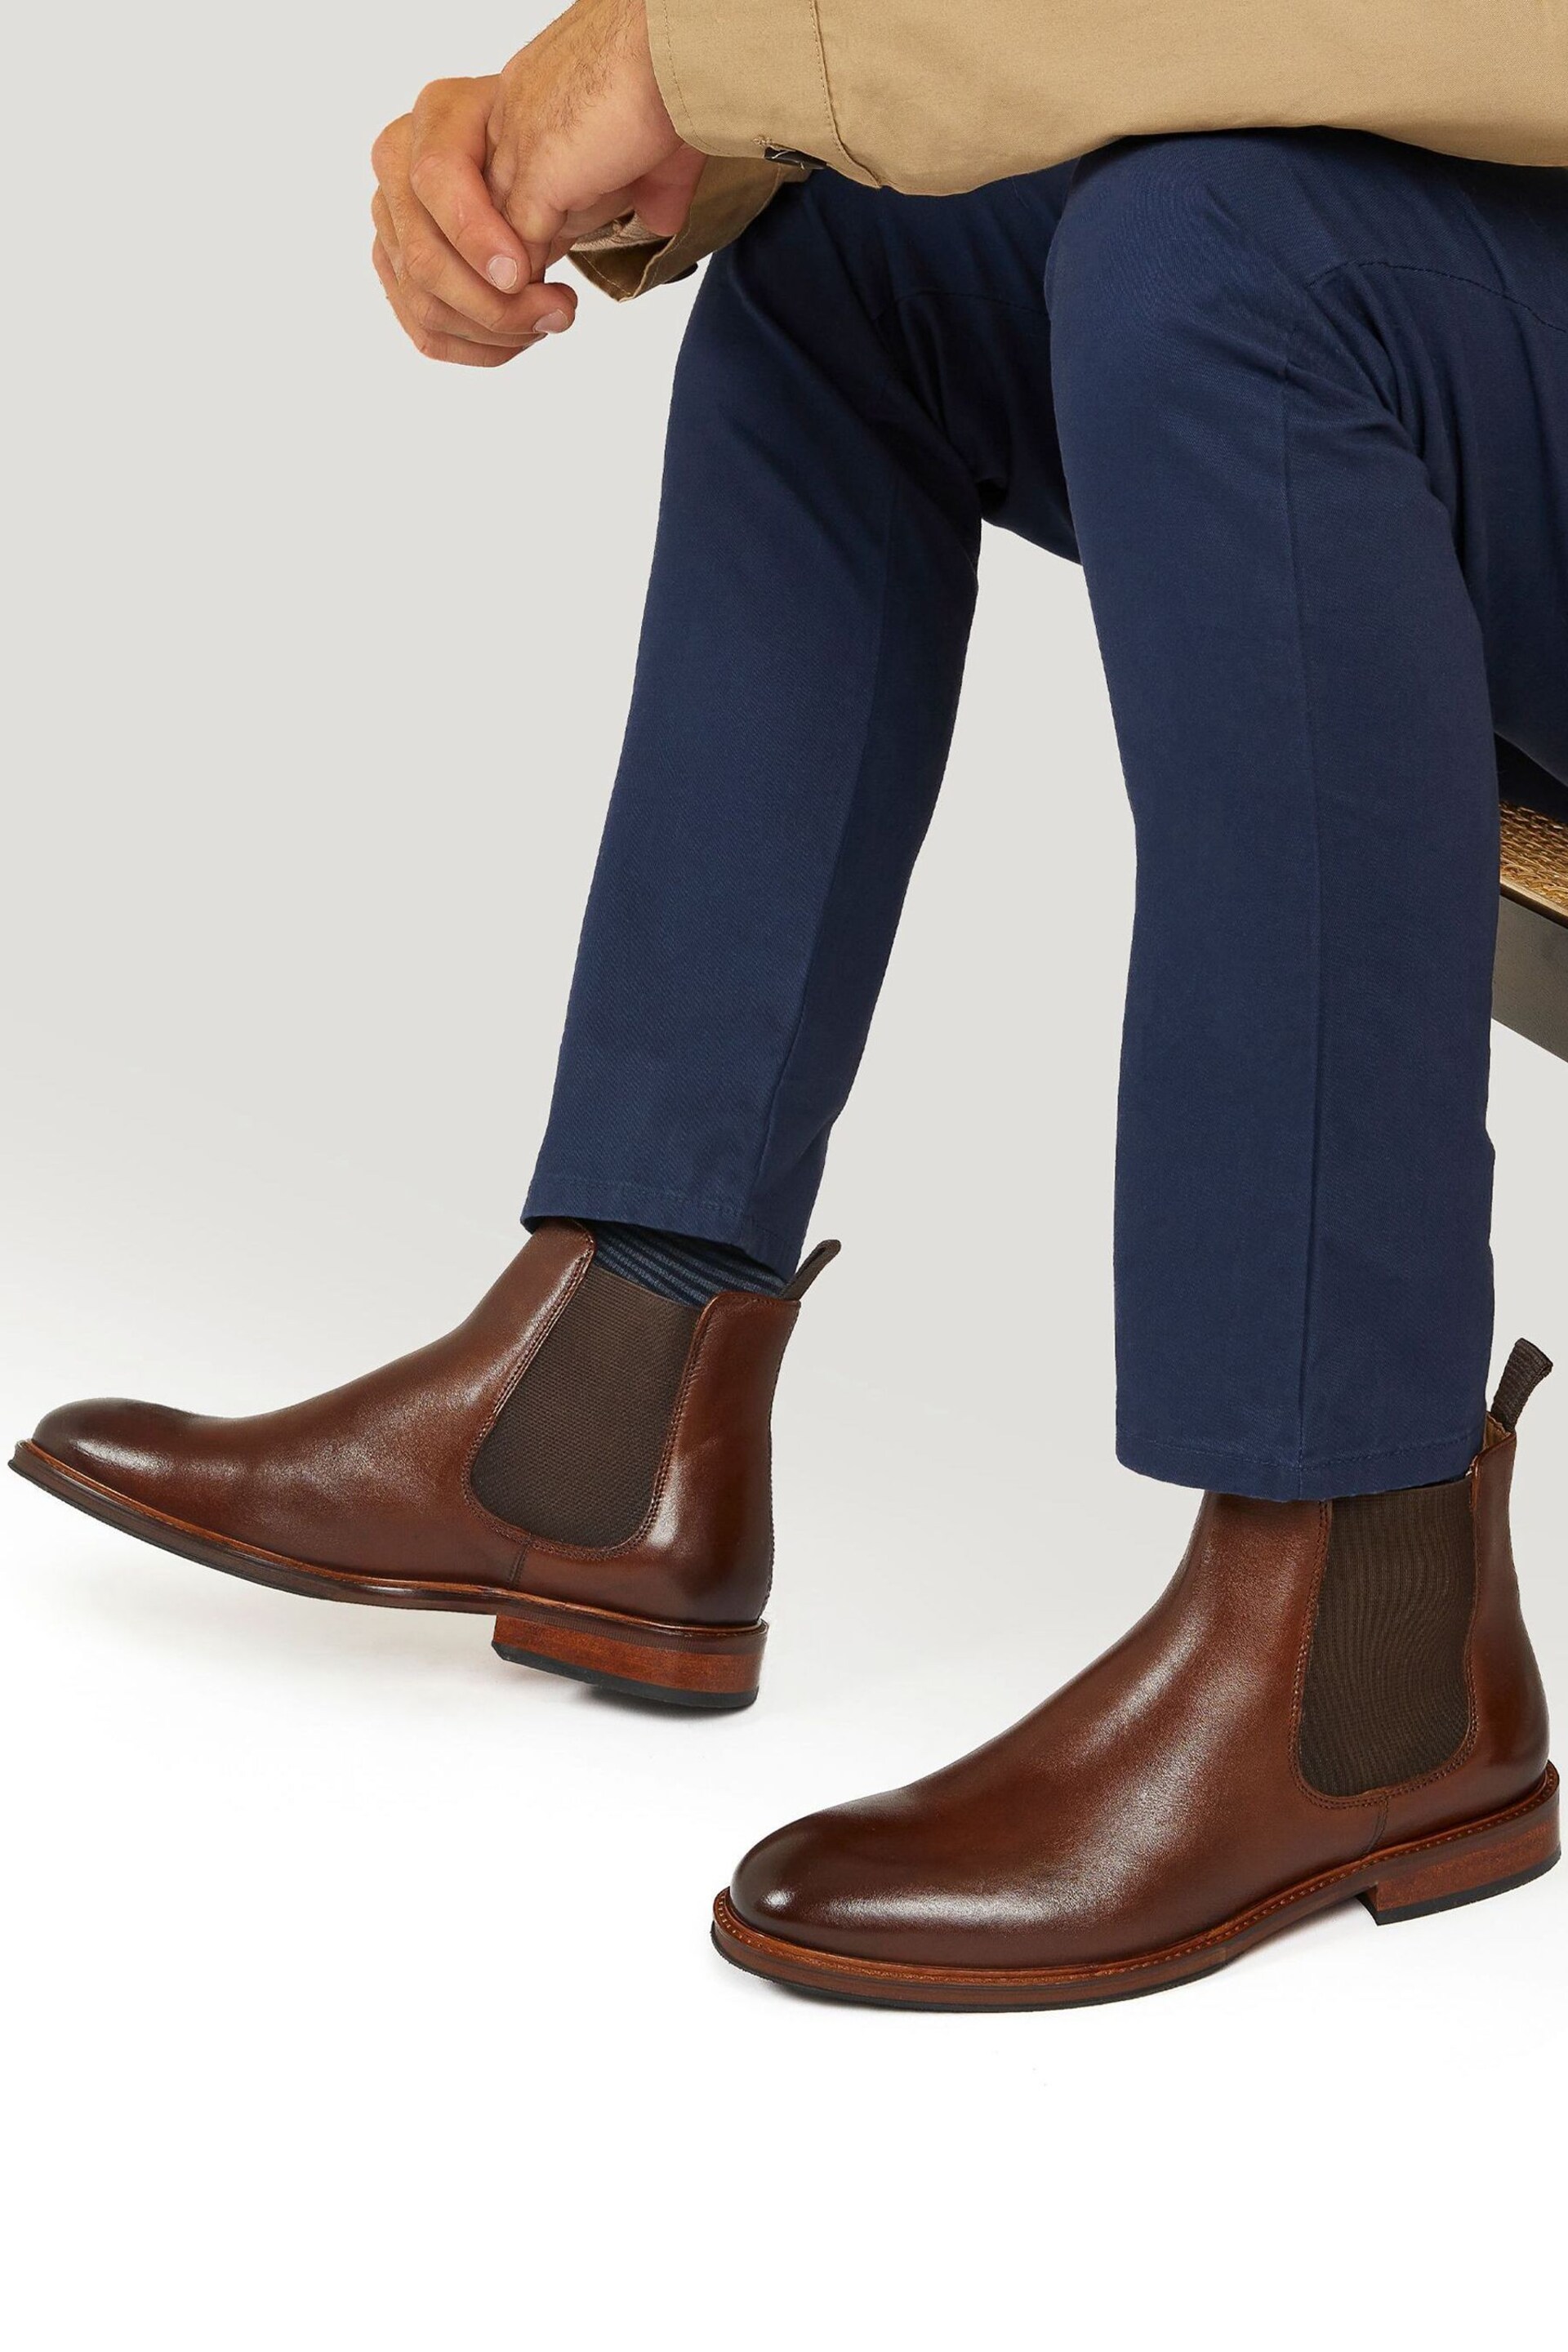 Jones Bootmaker Deakin Leather Mens Chelsea Boots - Image 1 of 2